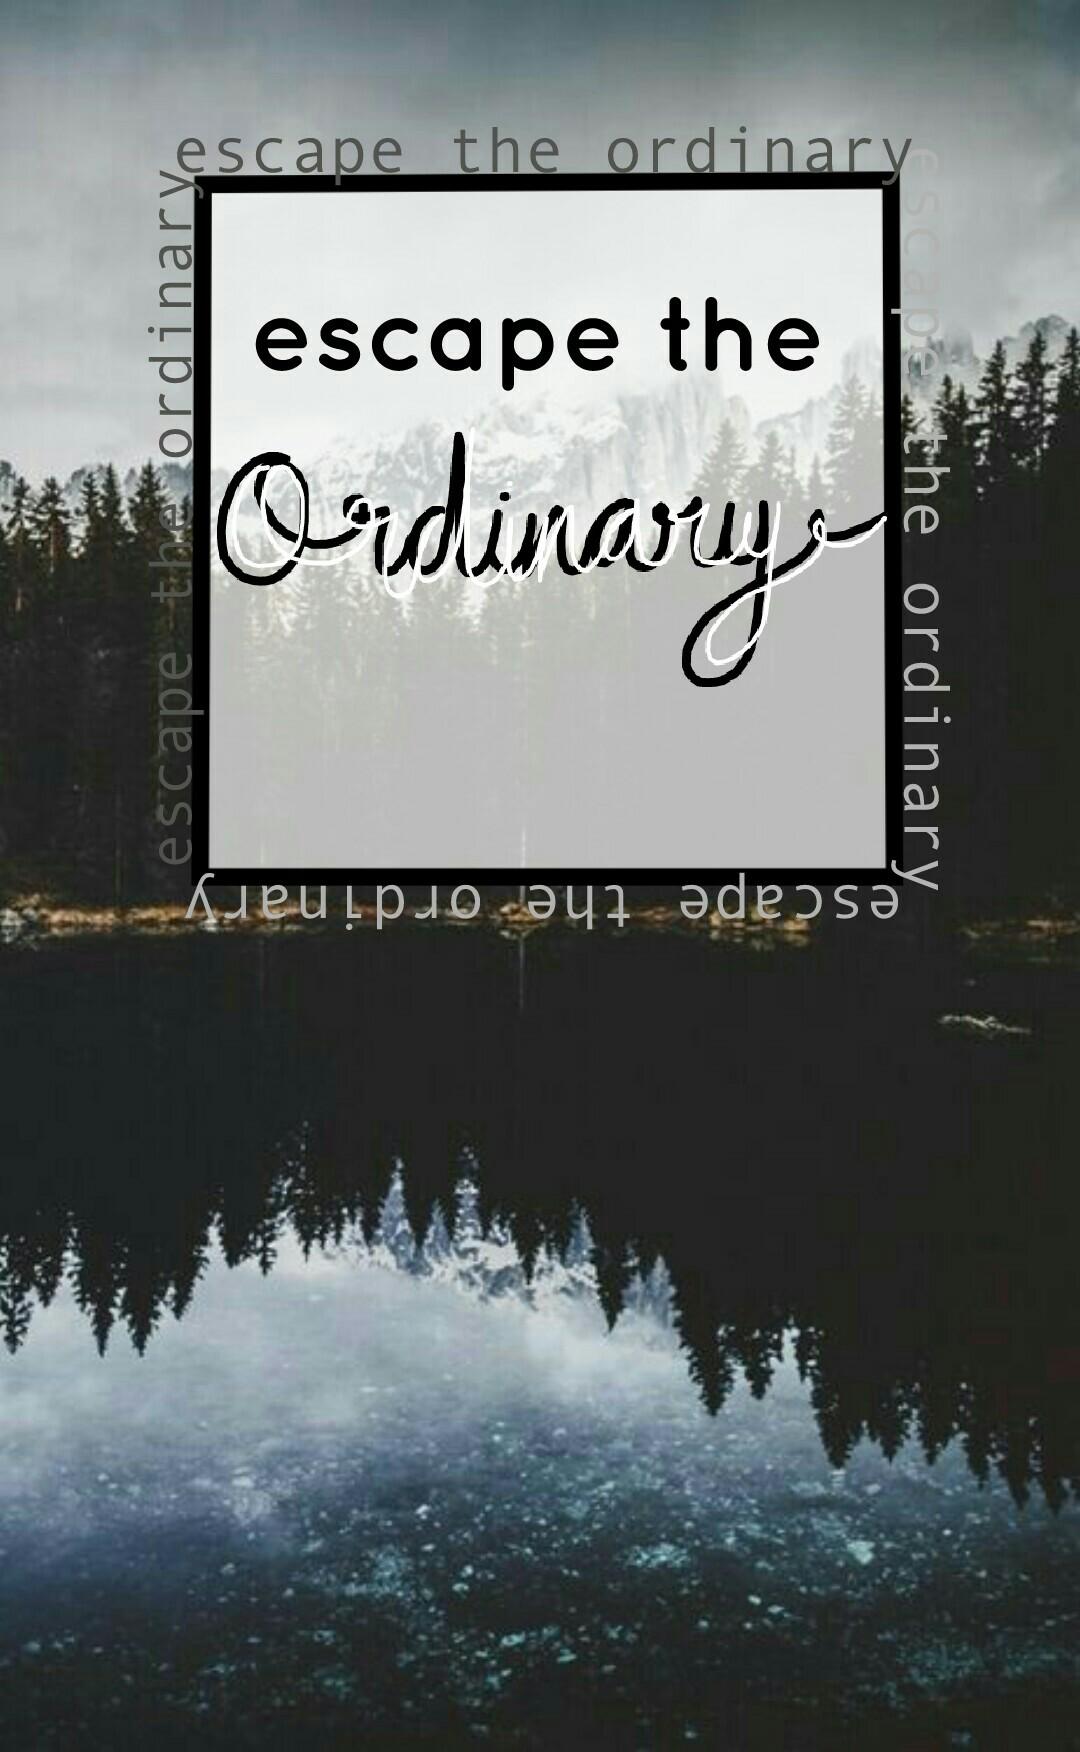 ~escape the ordinary~